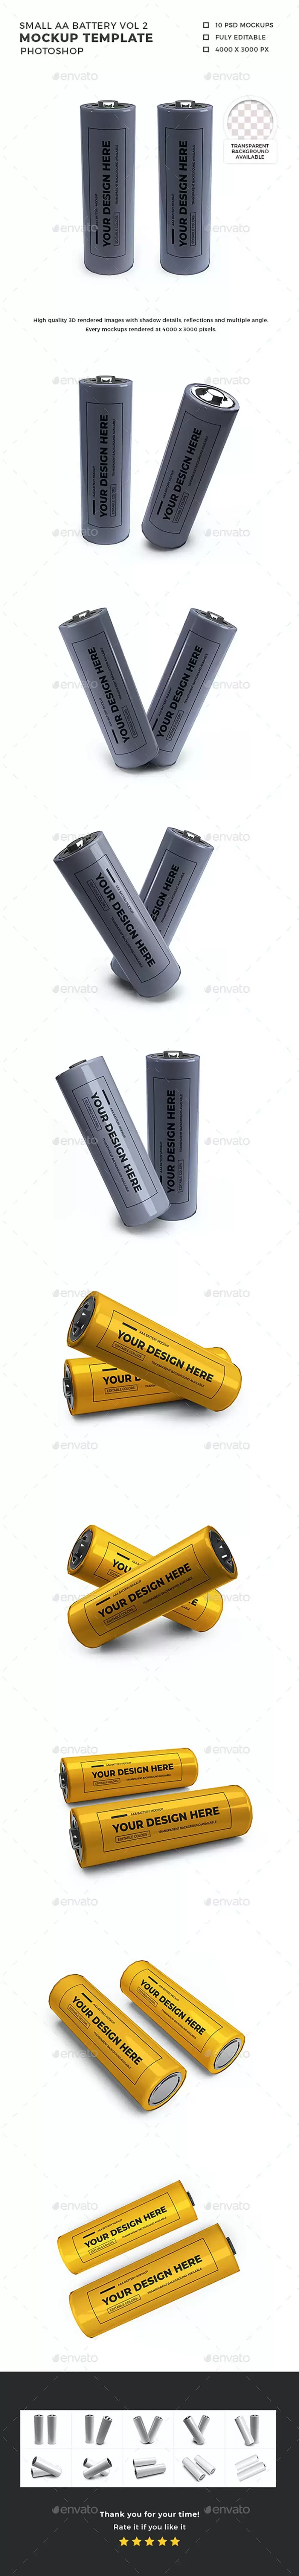 小型2A电池品牌设计样机模板集 (psd)免费下载